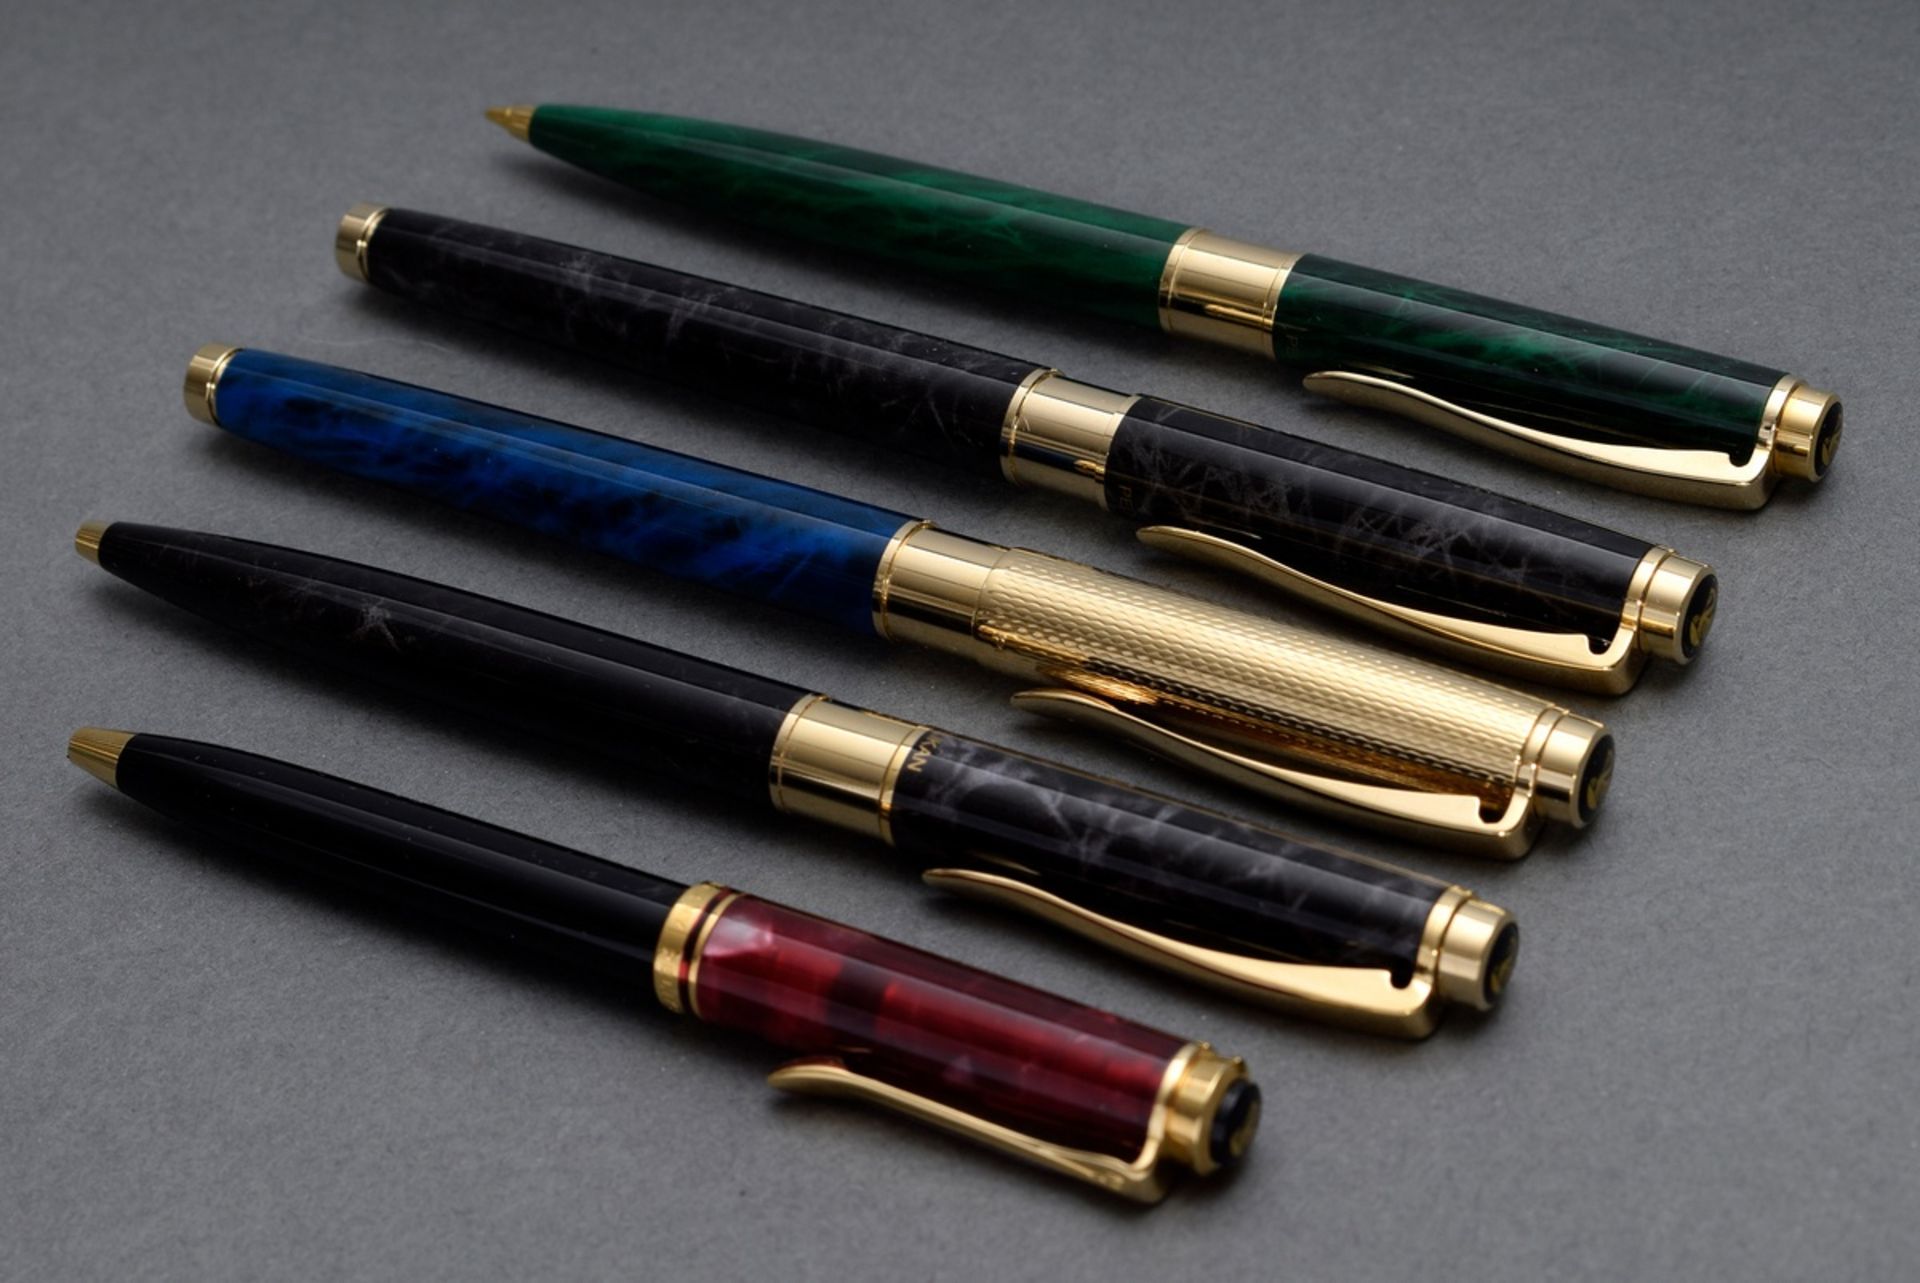 5 Diverse Pelikan Schreibgeräte „Celebry“: 2 Füllfederhalter, 2 Kugelschreiber und 1 Druckbleistift - Bild 3 aus 4